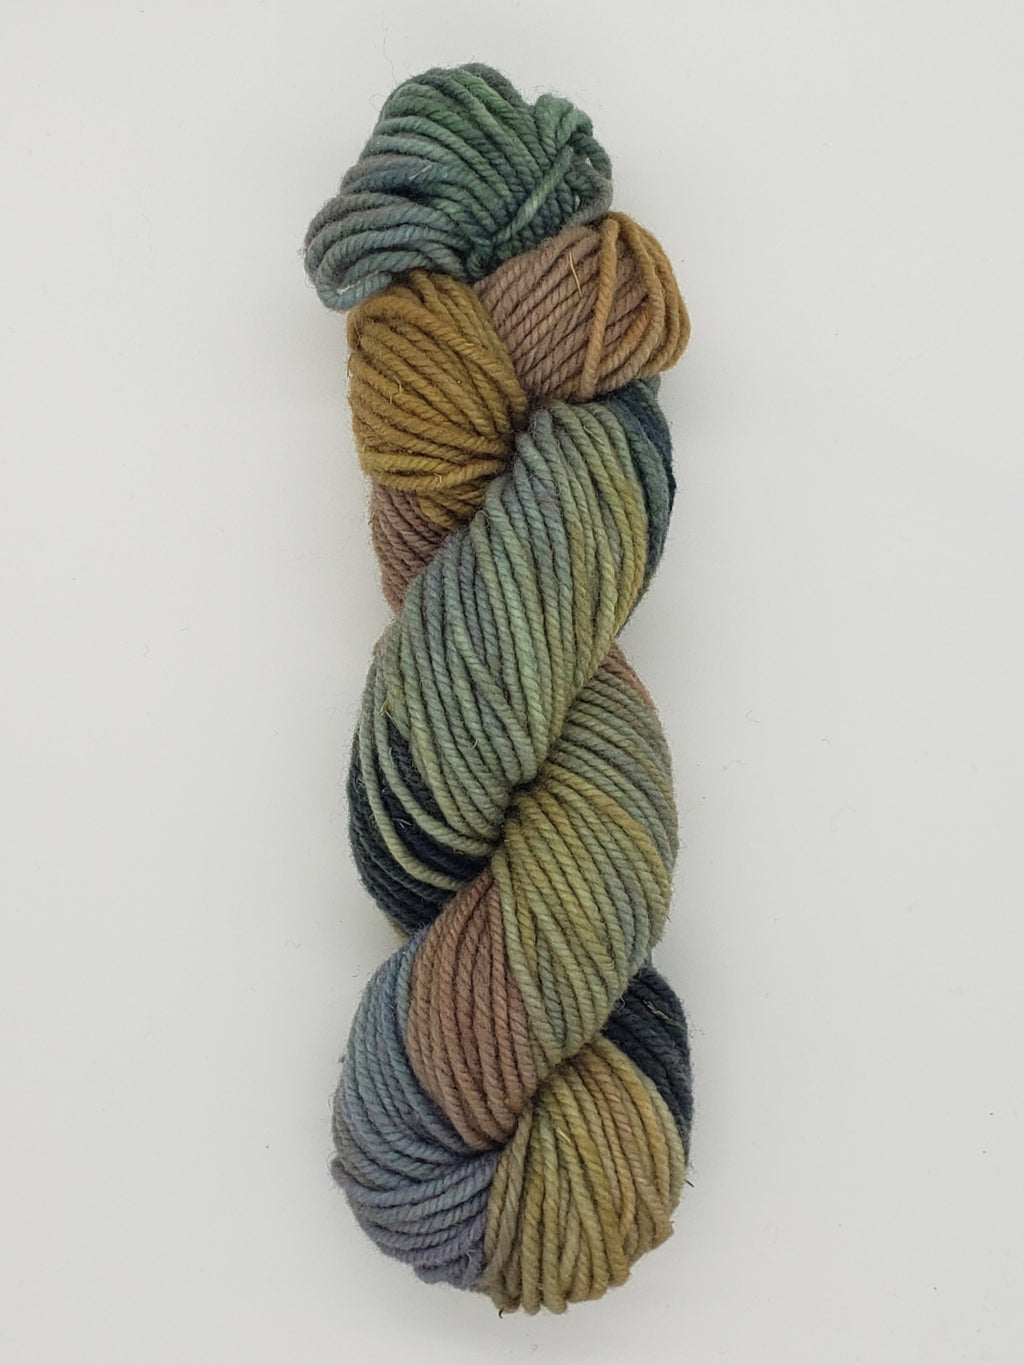 Wonder Woolen - SEA OAK - Fleece Artist Hand Dyed Yarn - Shades of Blue/Green/Beige